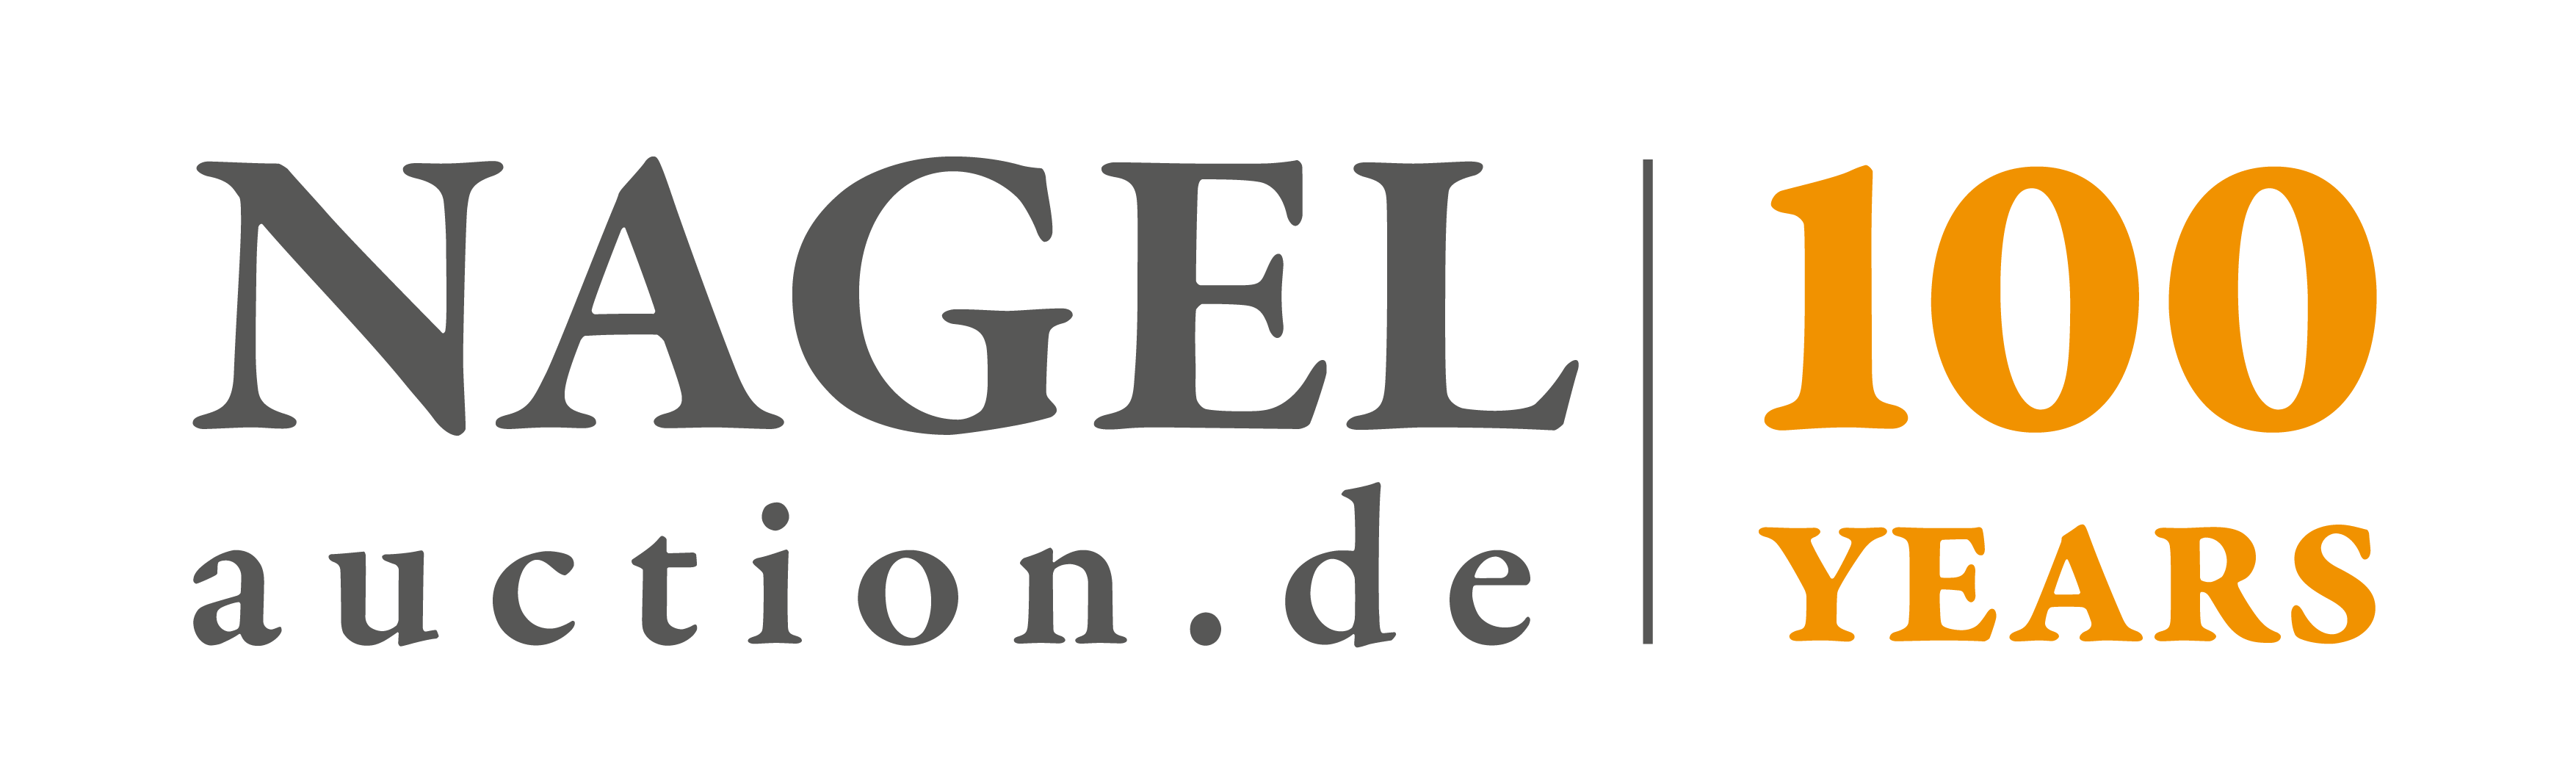 Nagel Auktionen GmbH